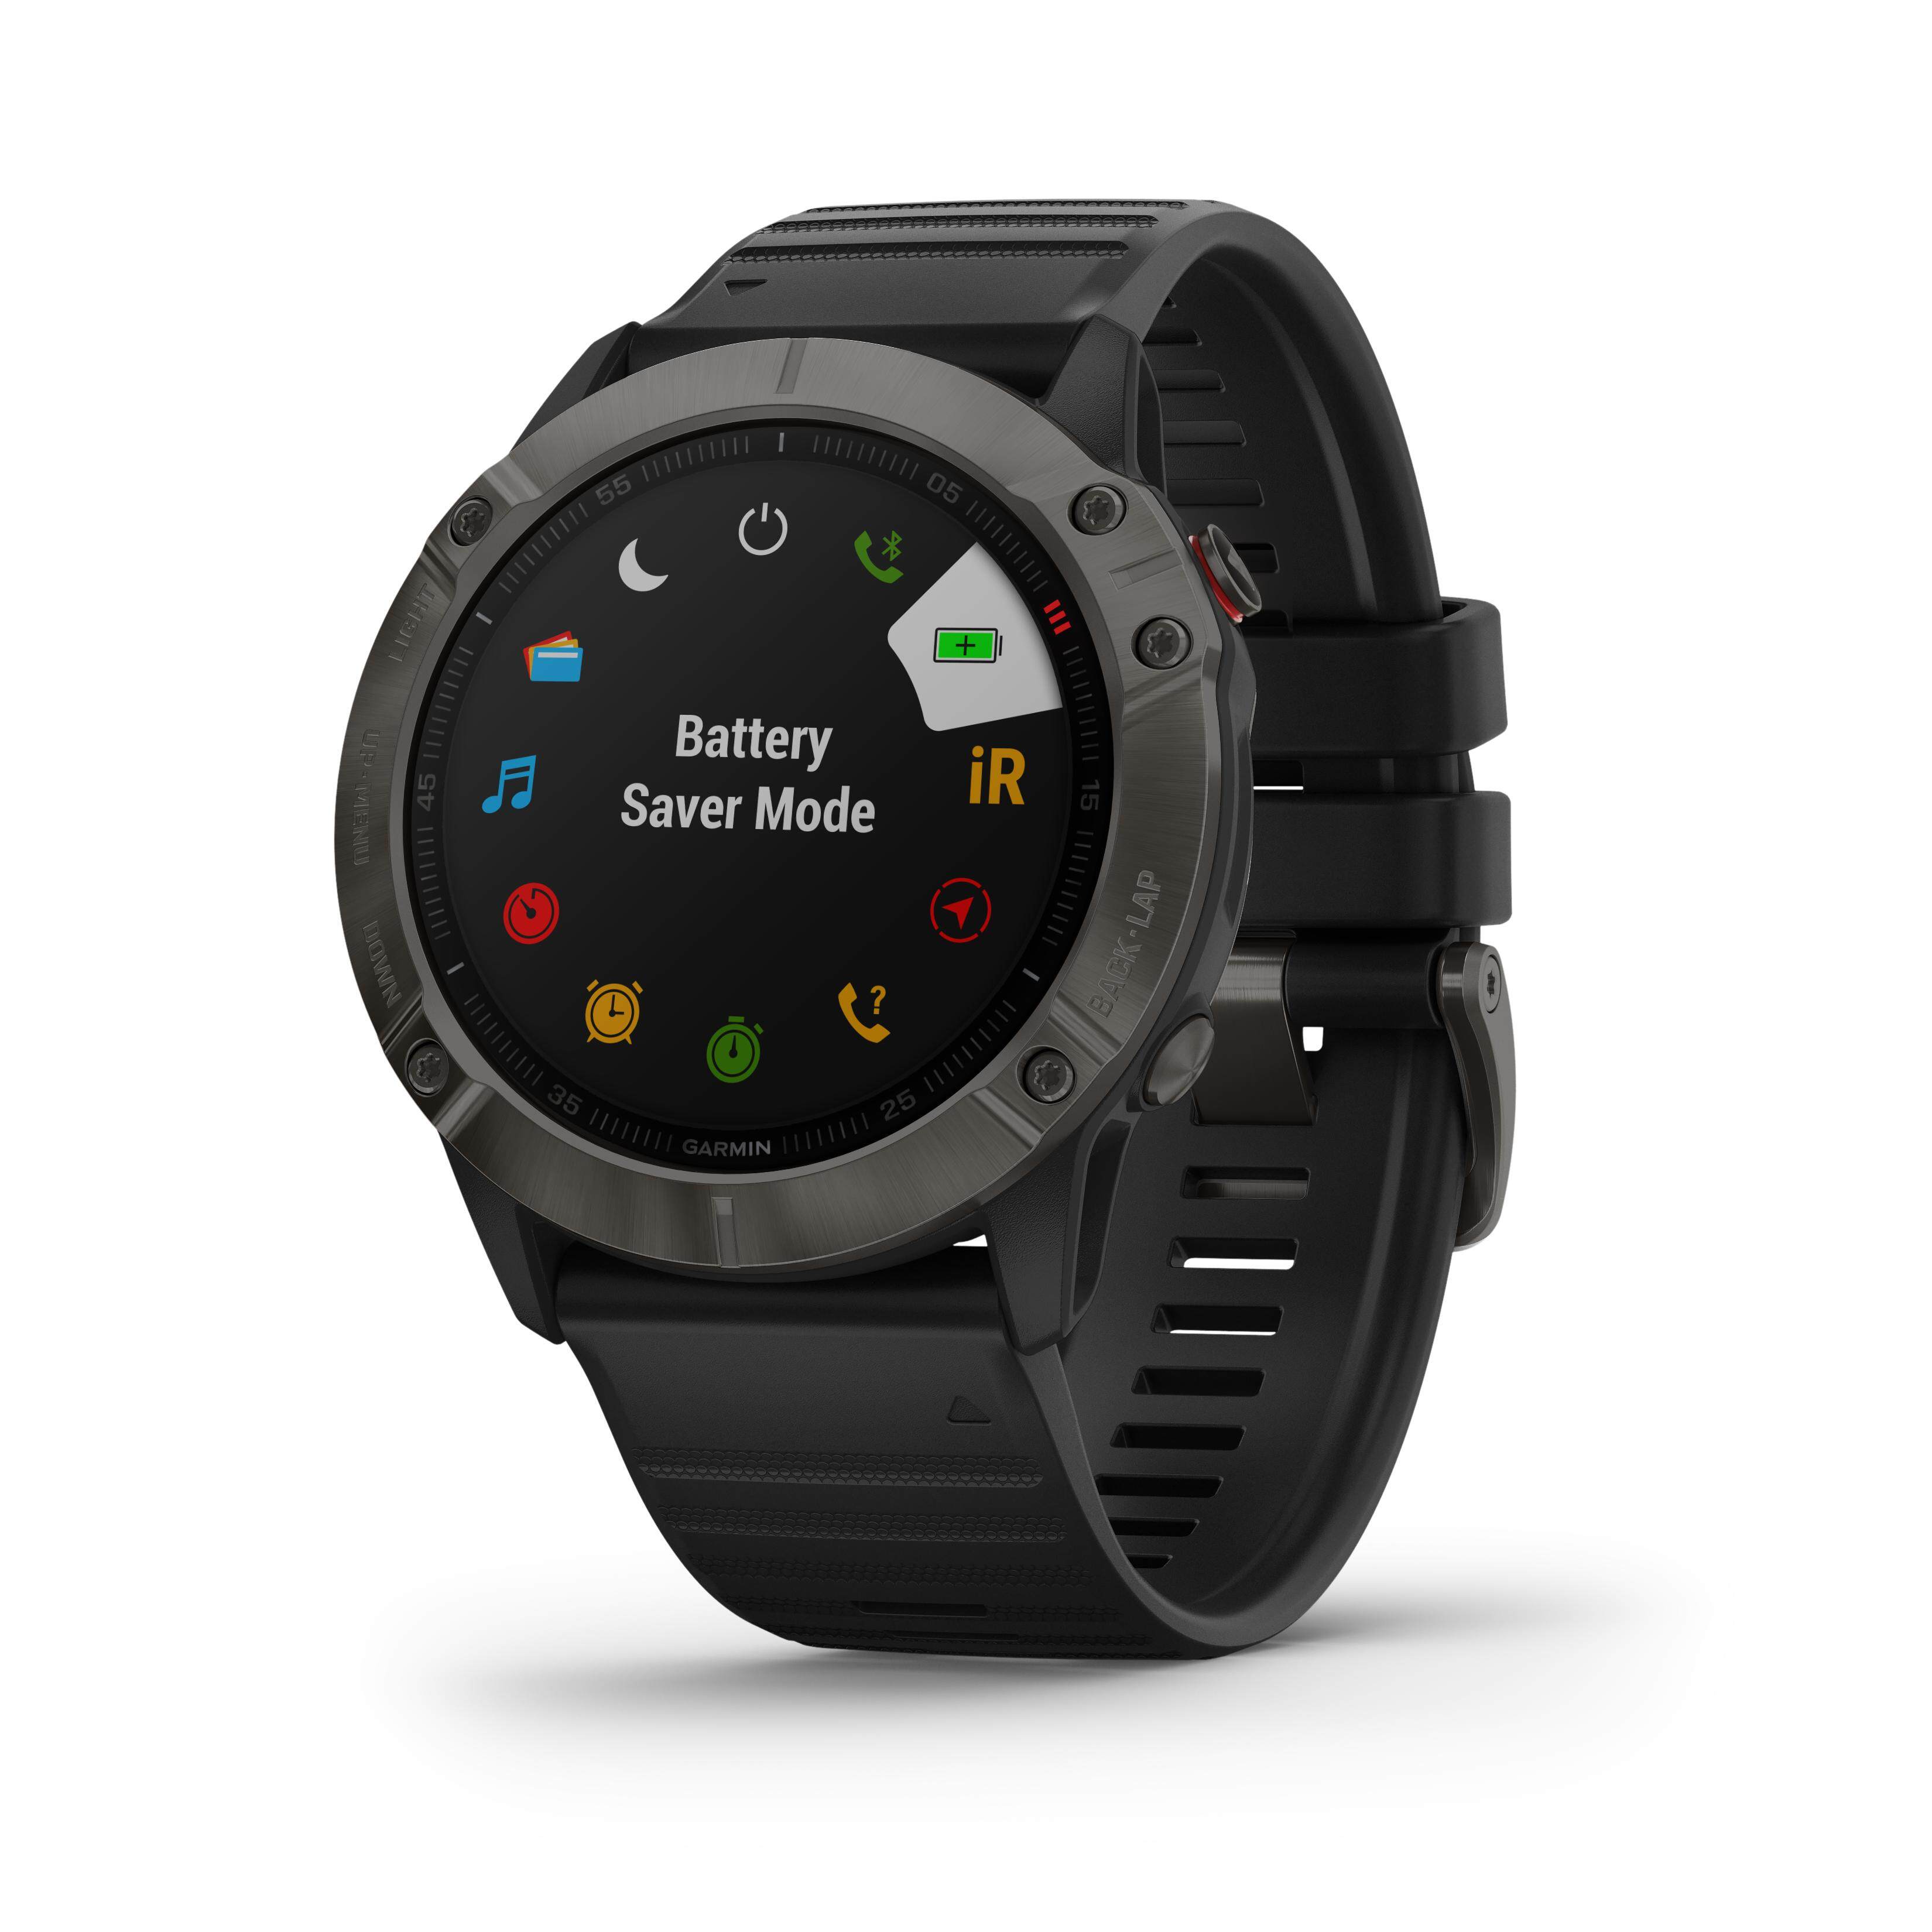 (NEW 2019) Garmin Fenix 6X Ultimate Multisport GPS Smartwatch with Topo & Ski Maps